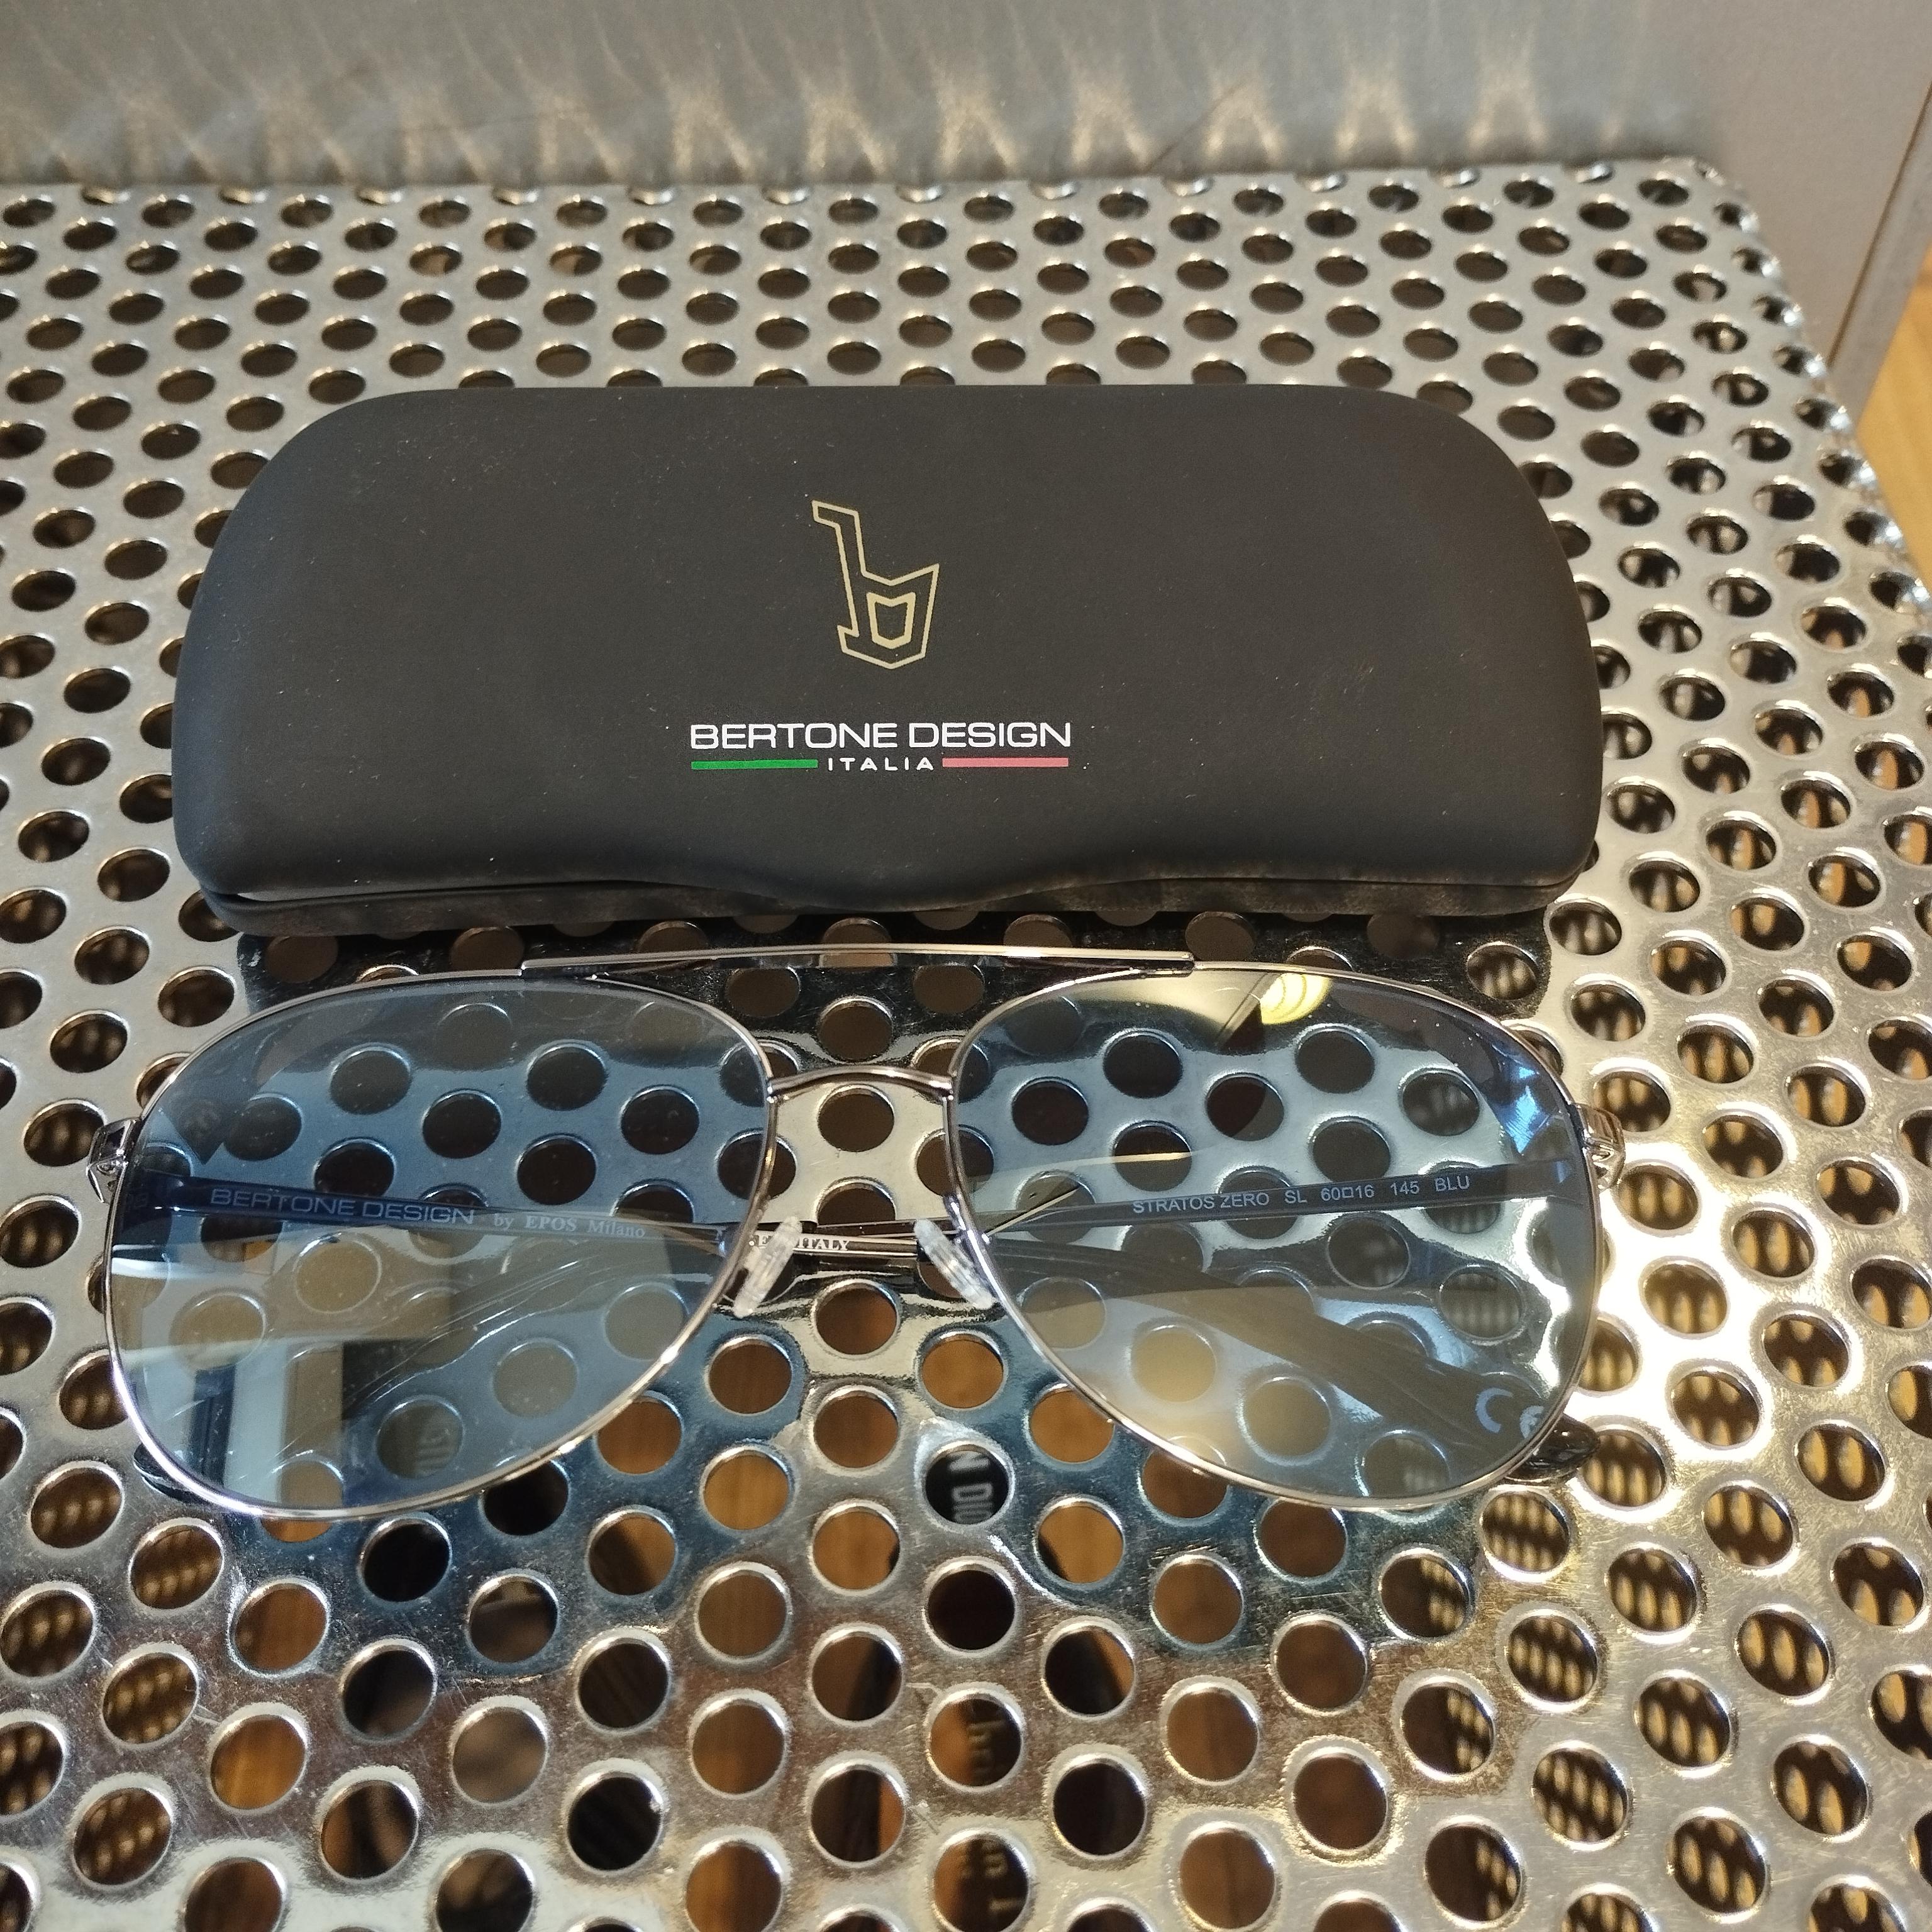 Bertone Design Stratos Zero Limited Edition Sunglasses In Excellent Condition For Sale In Gazzaniga (BG), IT